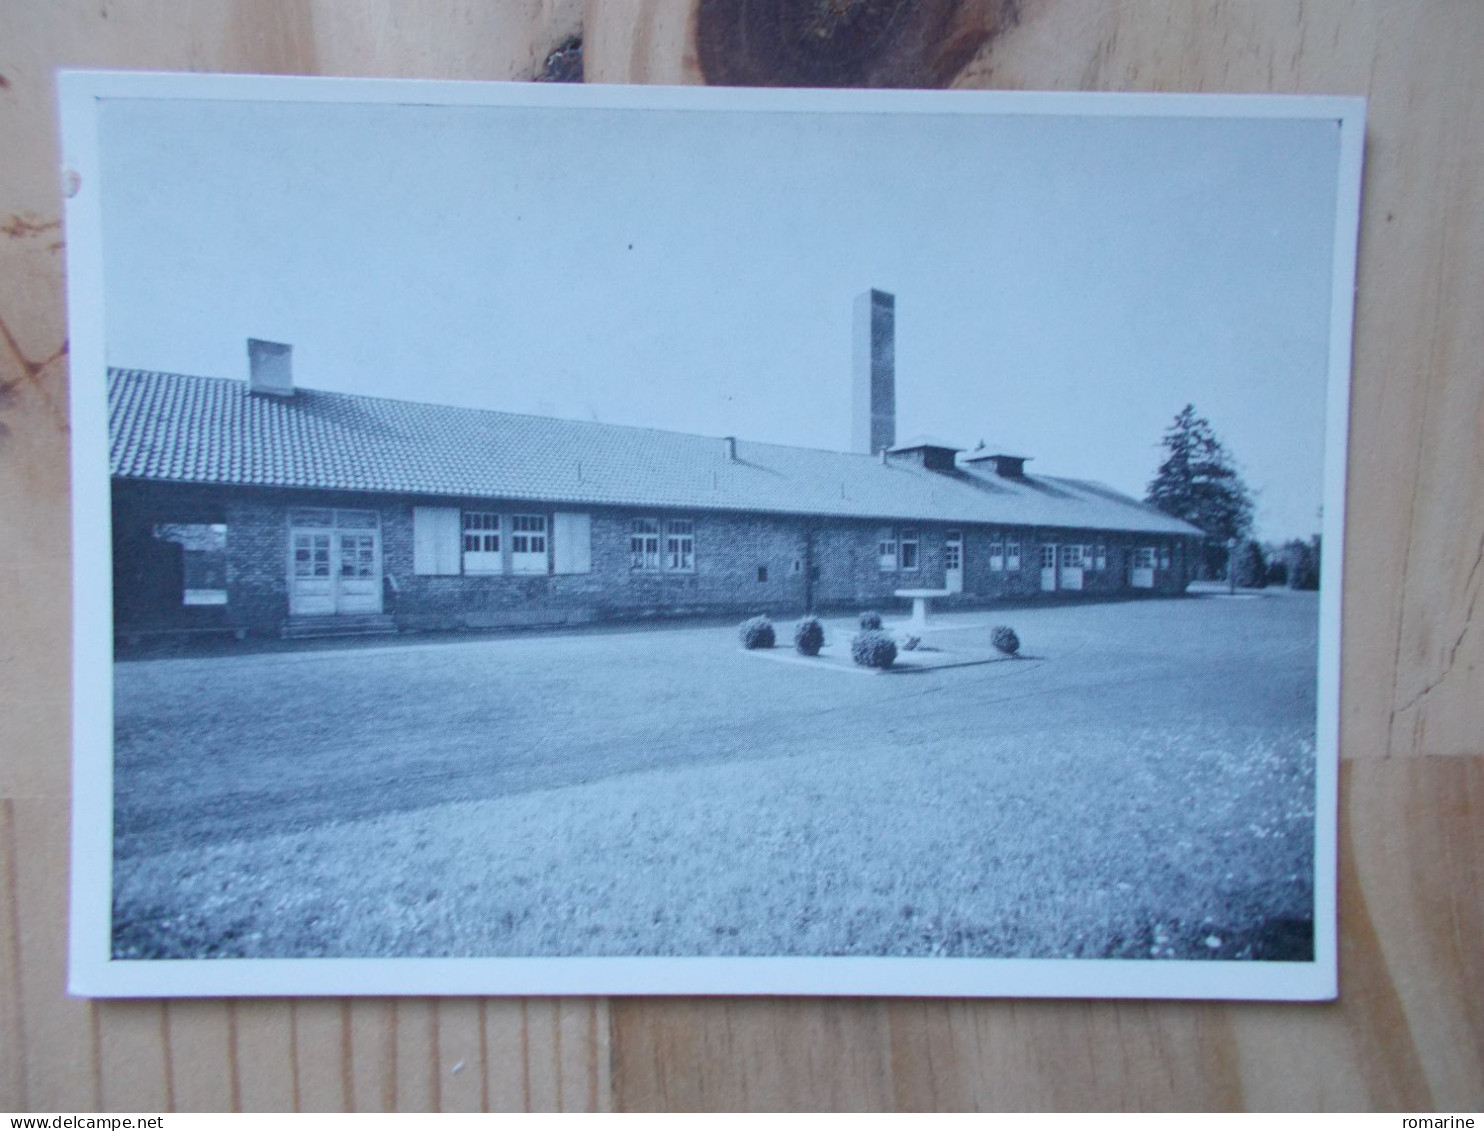 Le Nouveau Crematorium - Dachau